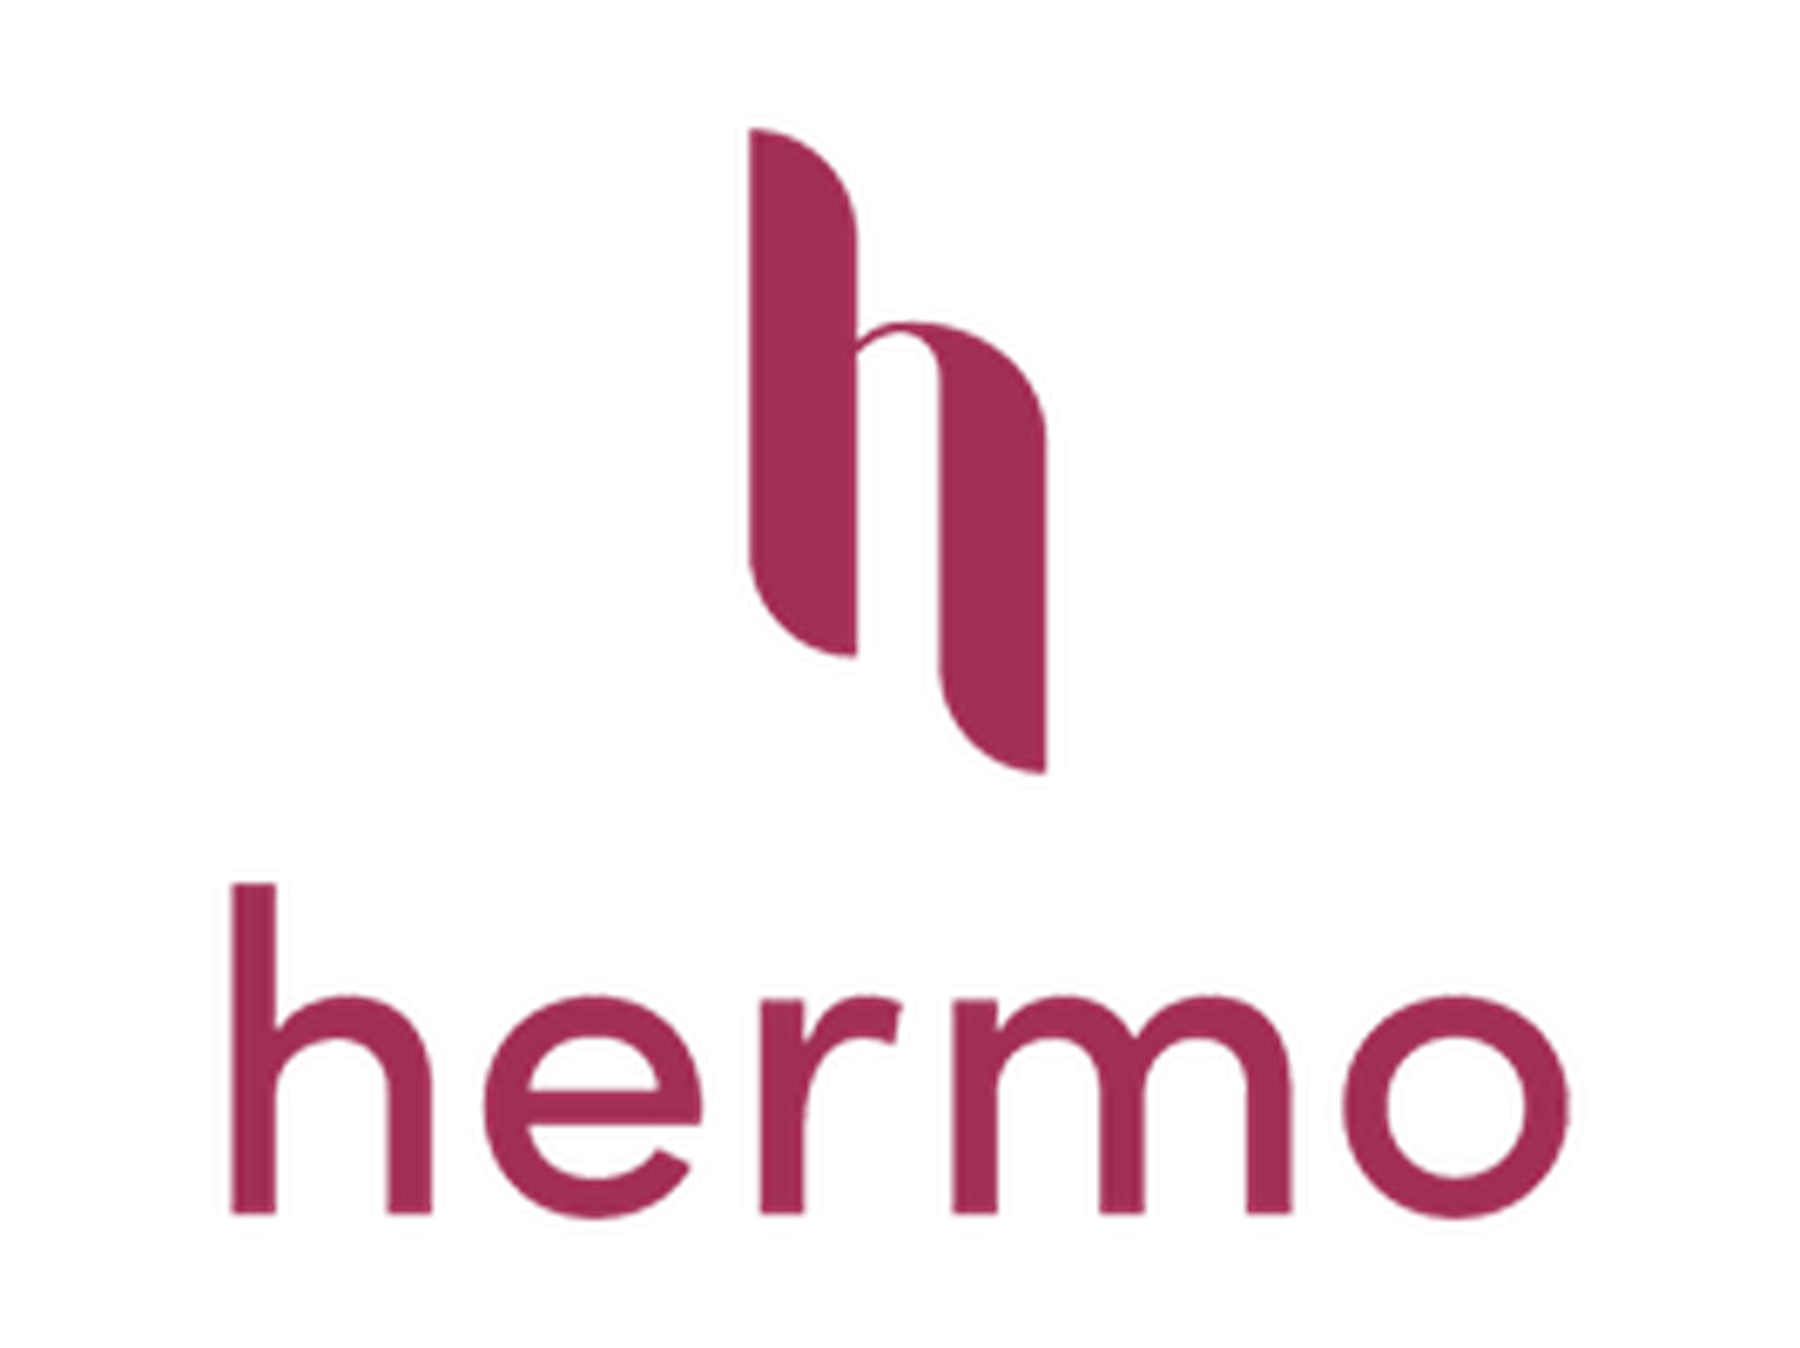 Hermo Promo Code